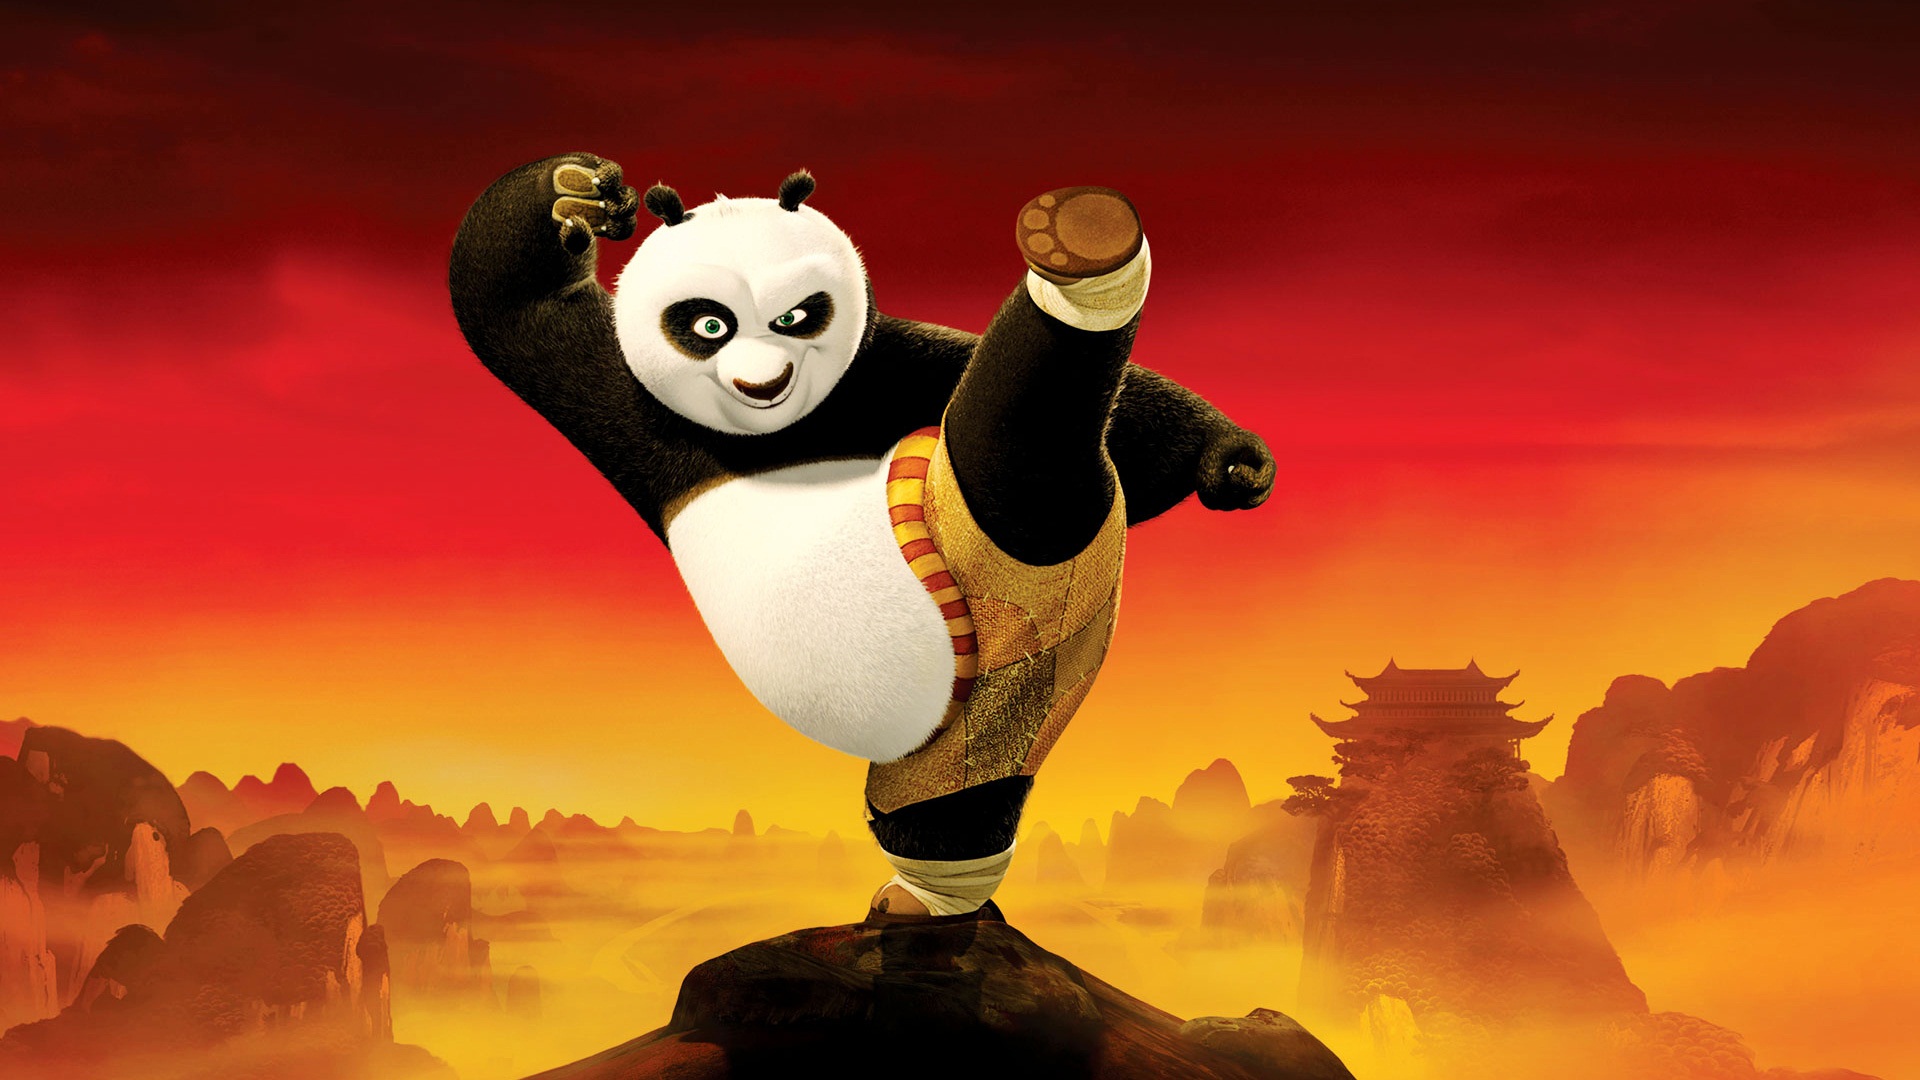 49+] Kung Fu Panda HD Wallpaper - WallpaperSafari